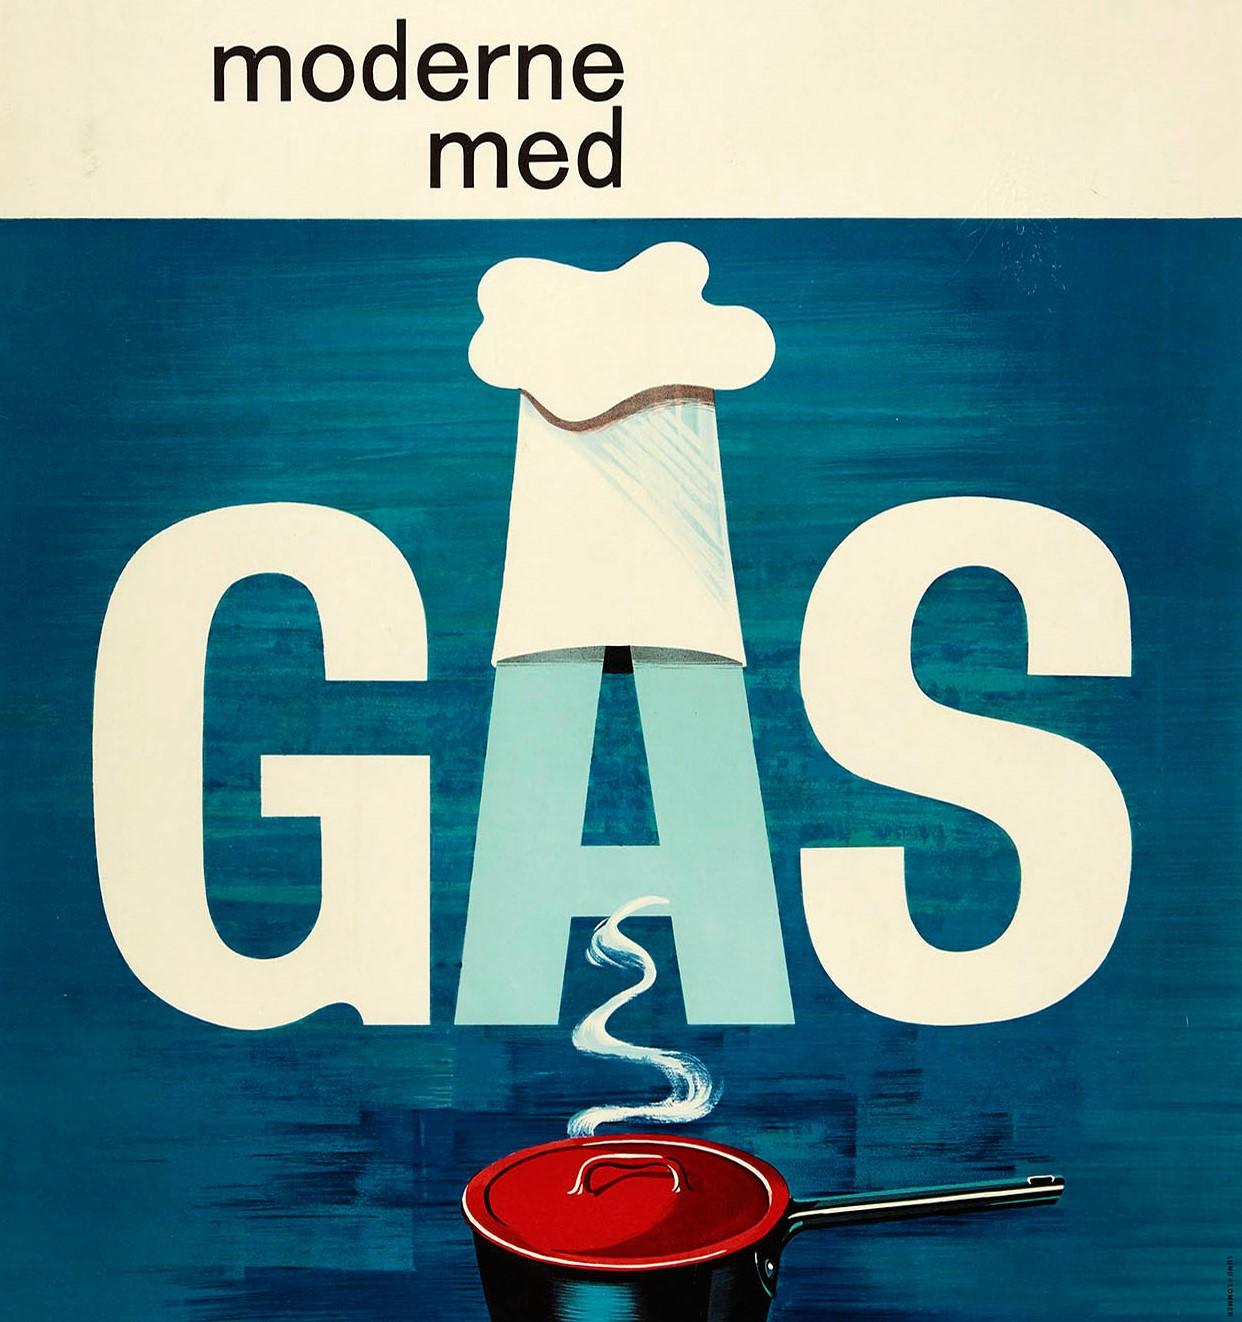 Affiche publicitaire originale moderne du milieu du siècle dernier faisant la promotion de Moderne Med Gas / Modern With Gas avec un superbe design montrant la vapeur d'une casserole s'élevant du côté du couvercle rouge jusqu'aux lettres en gras